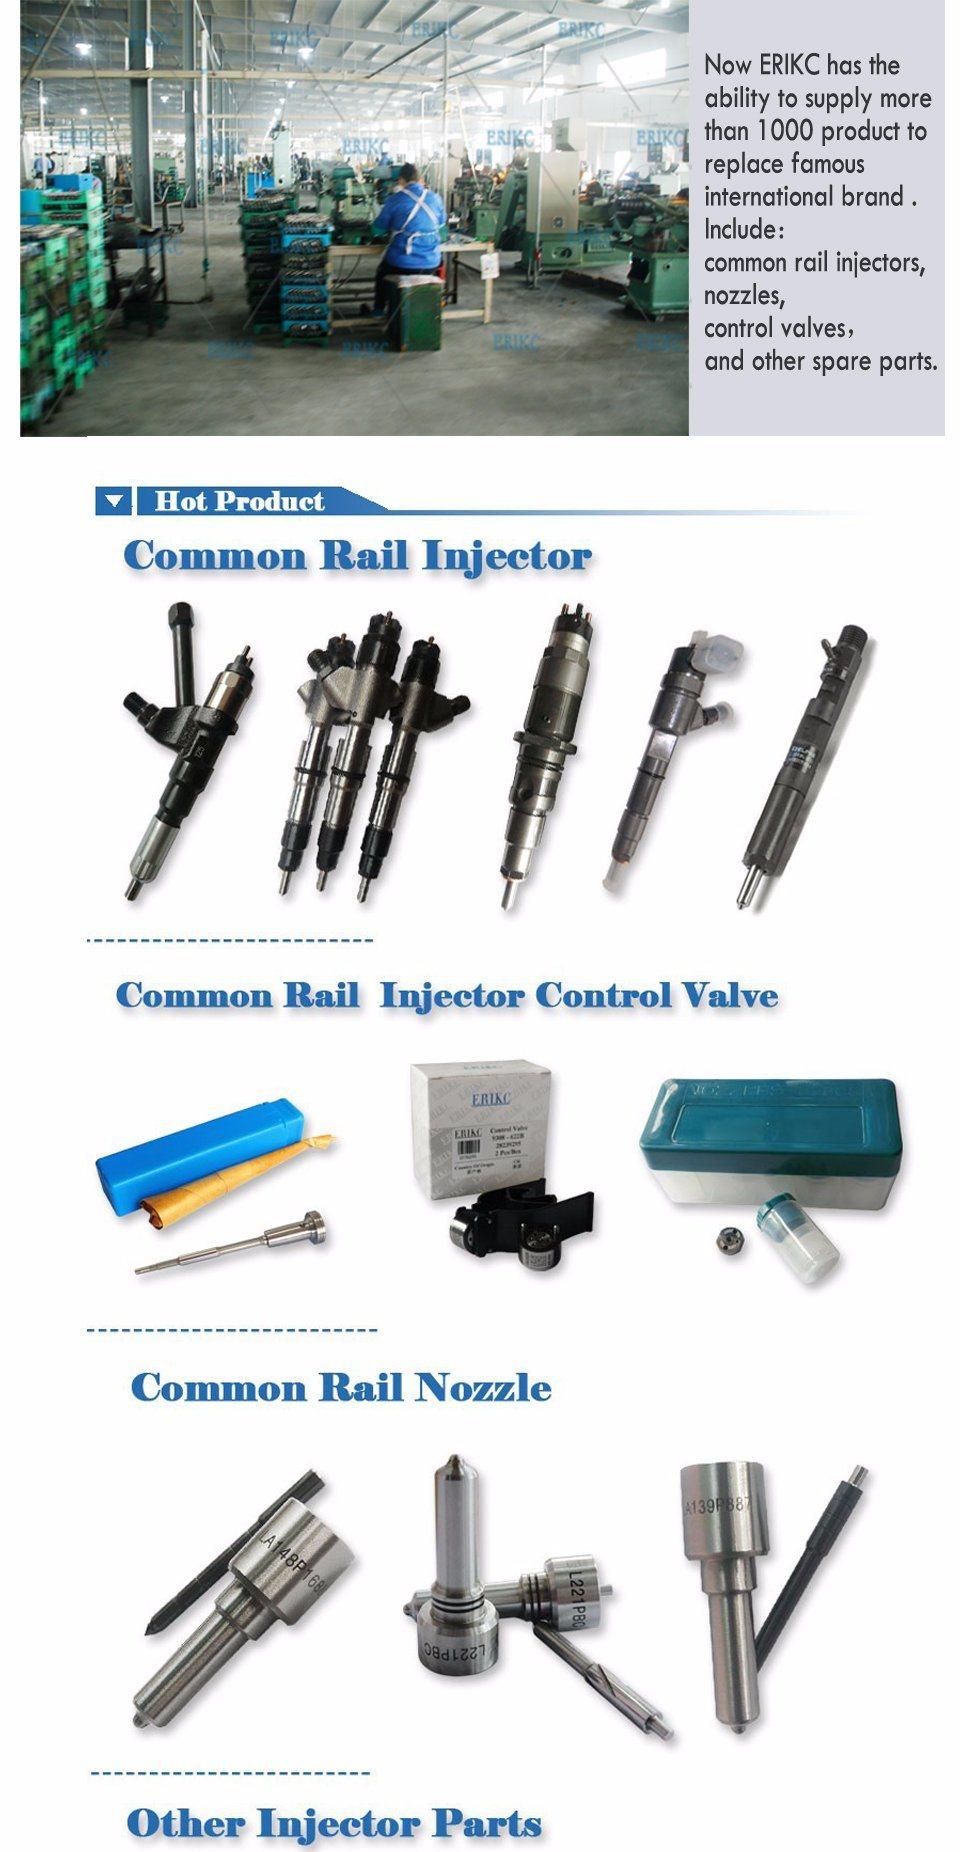 L223 Pbc Delphi Common Rail Spare Parts Injection Nozzle L223pbc Alla152FL233 for Bebe4c02001